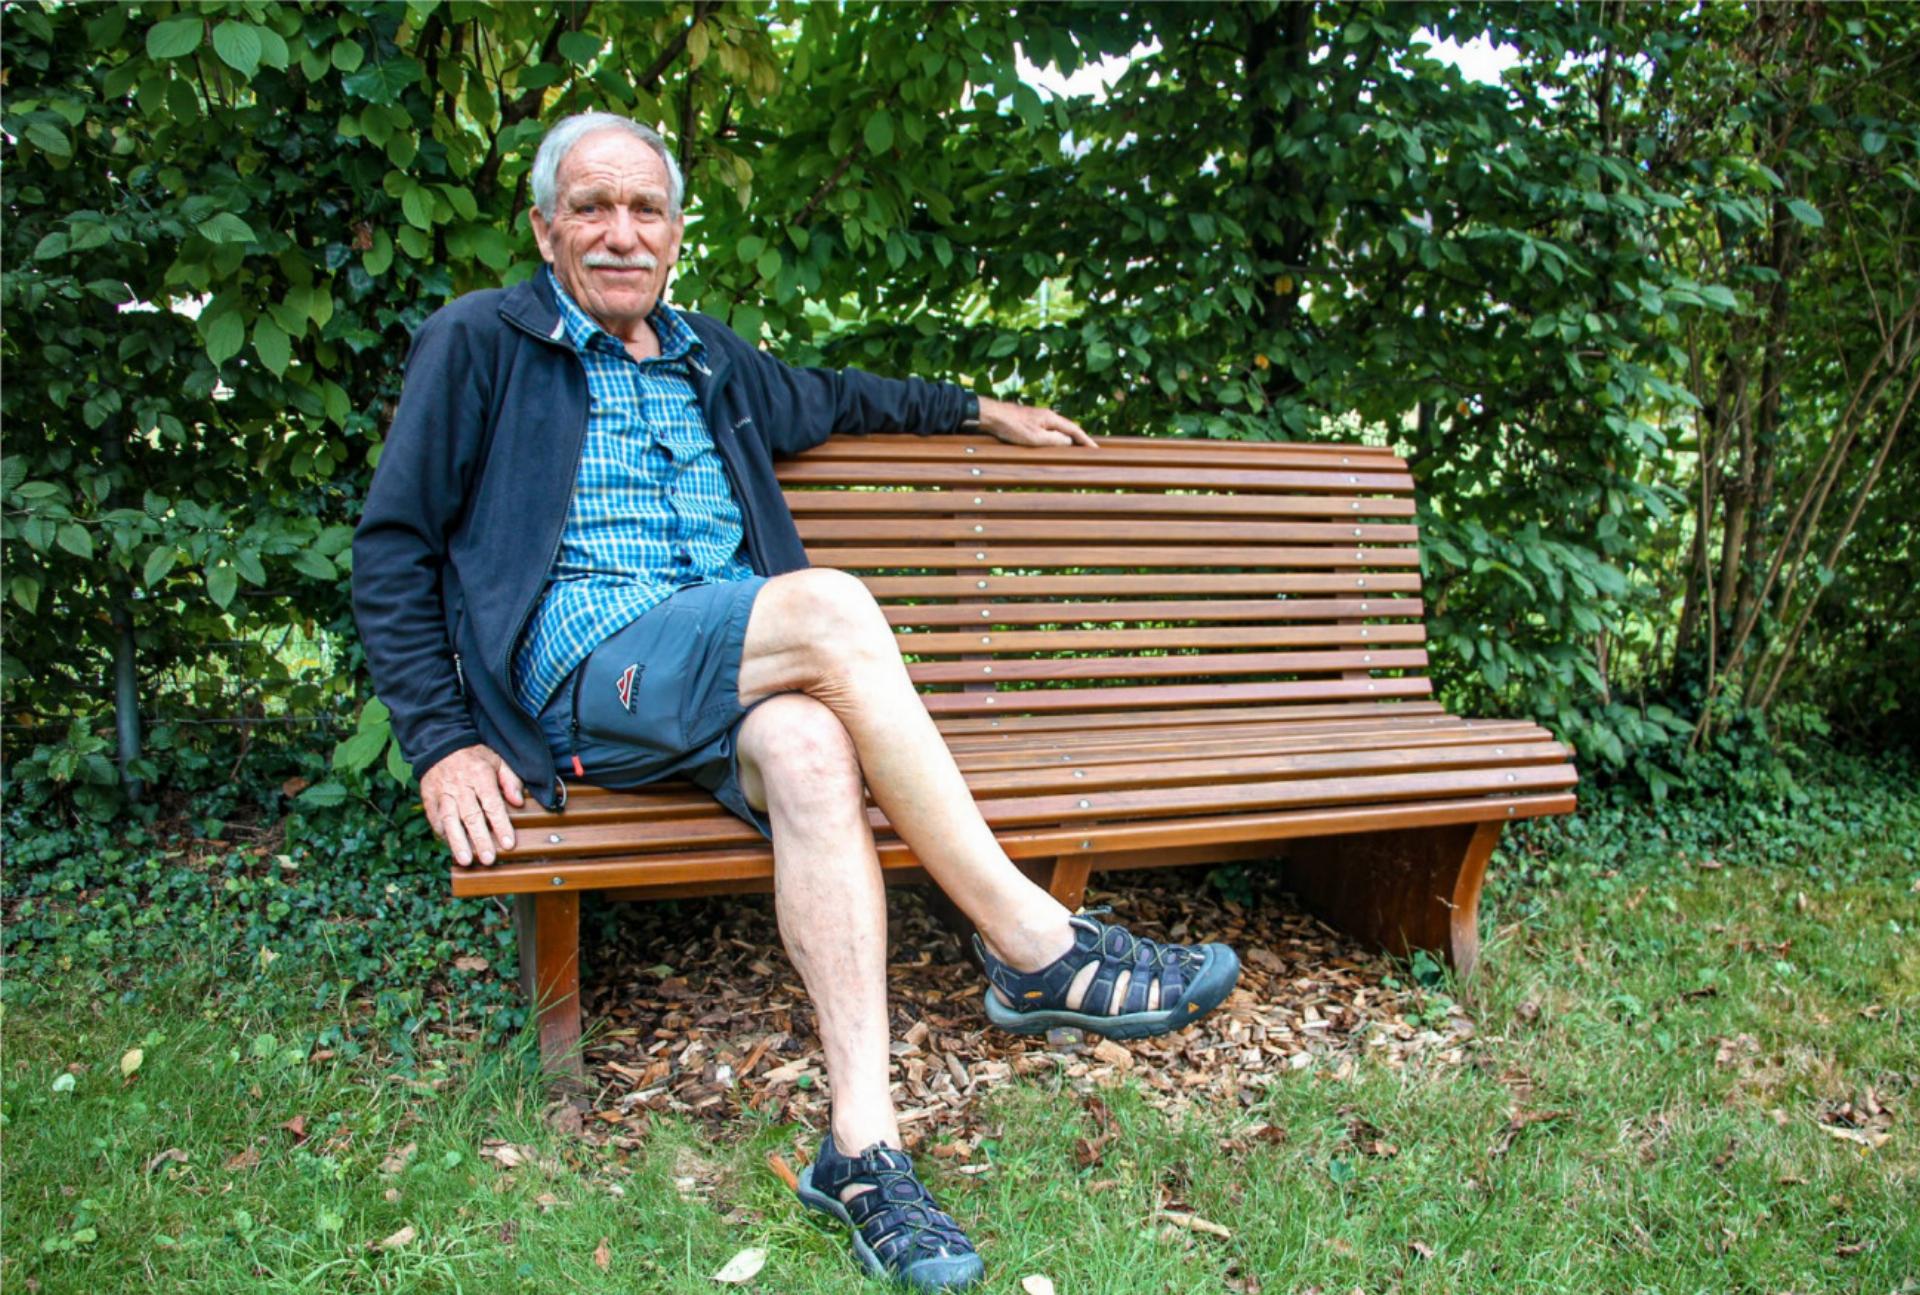 Gerne nimmt sich Eugen Walther Zeit, auf der Bank zu sitzen, die er zur Pensionierung erhalten hat. BILD: KATHARINA WITTWER